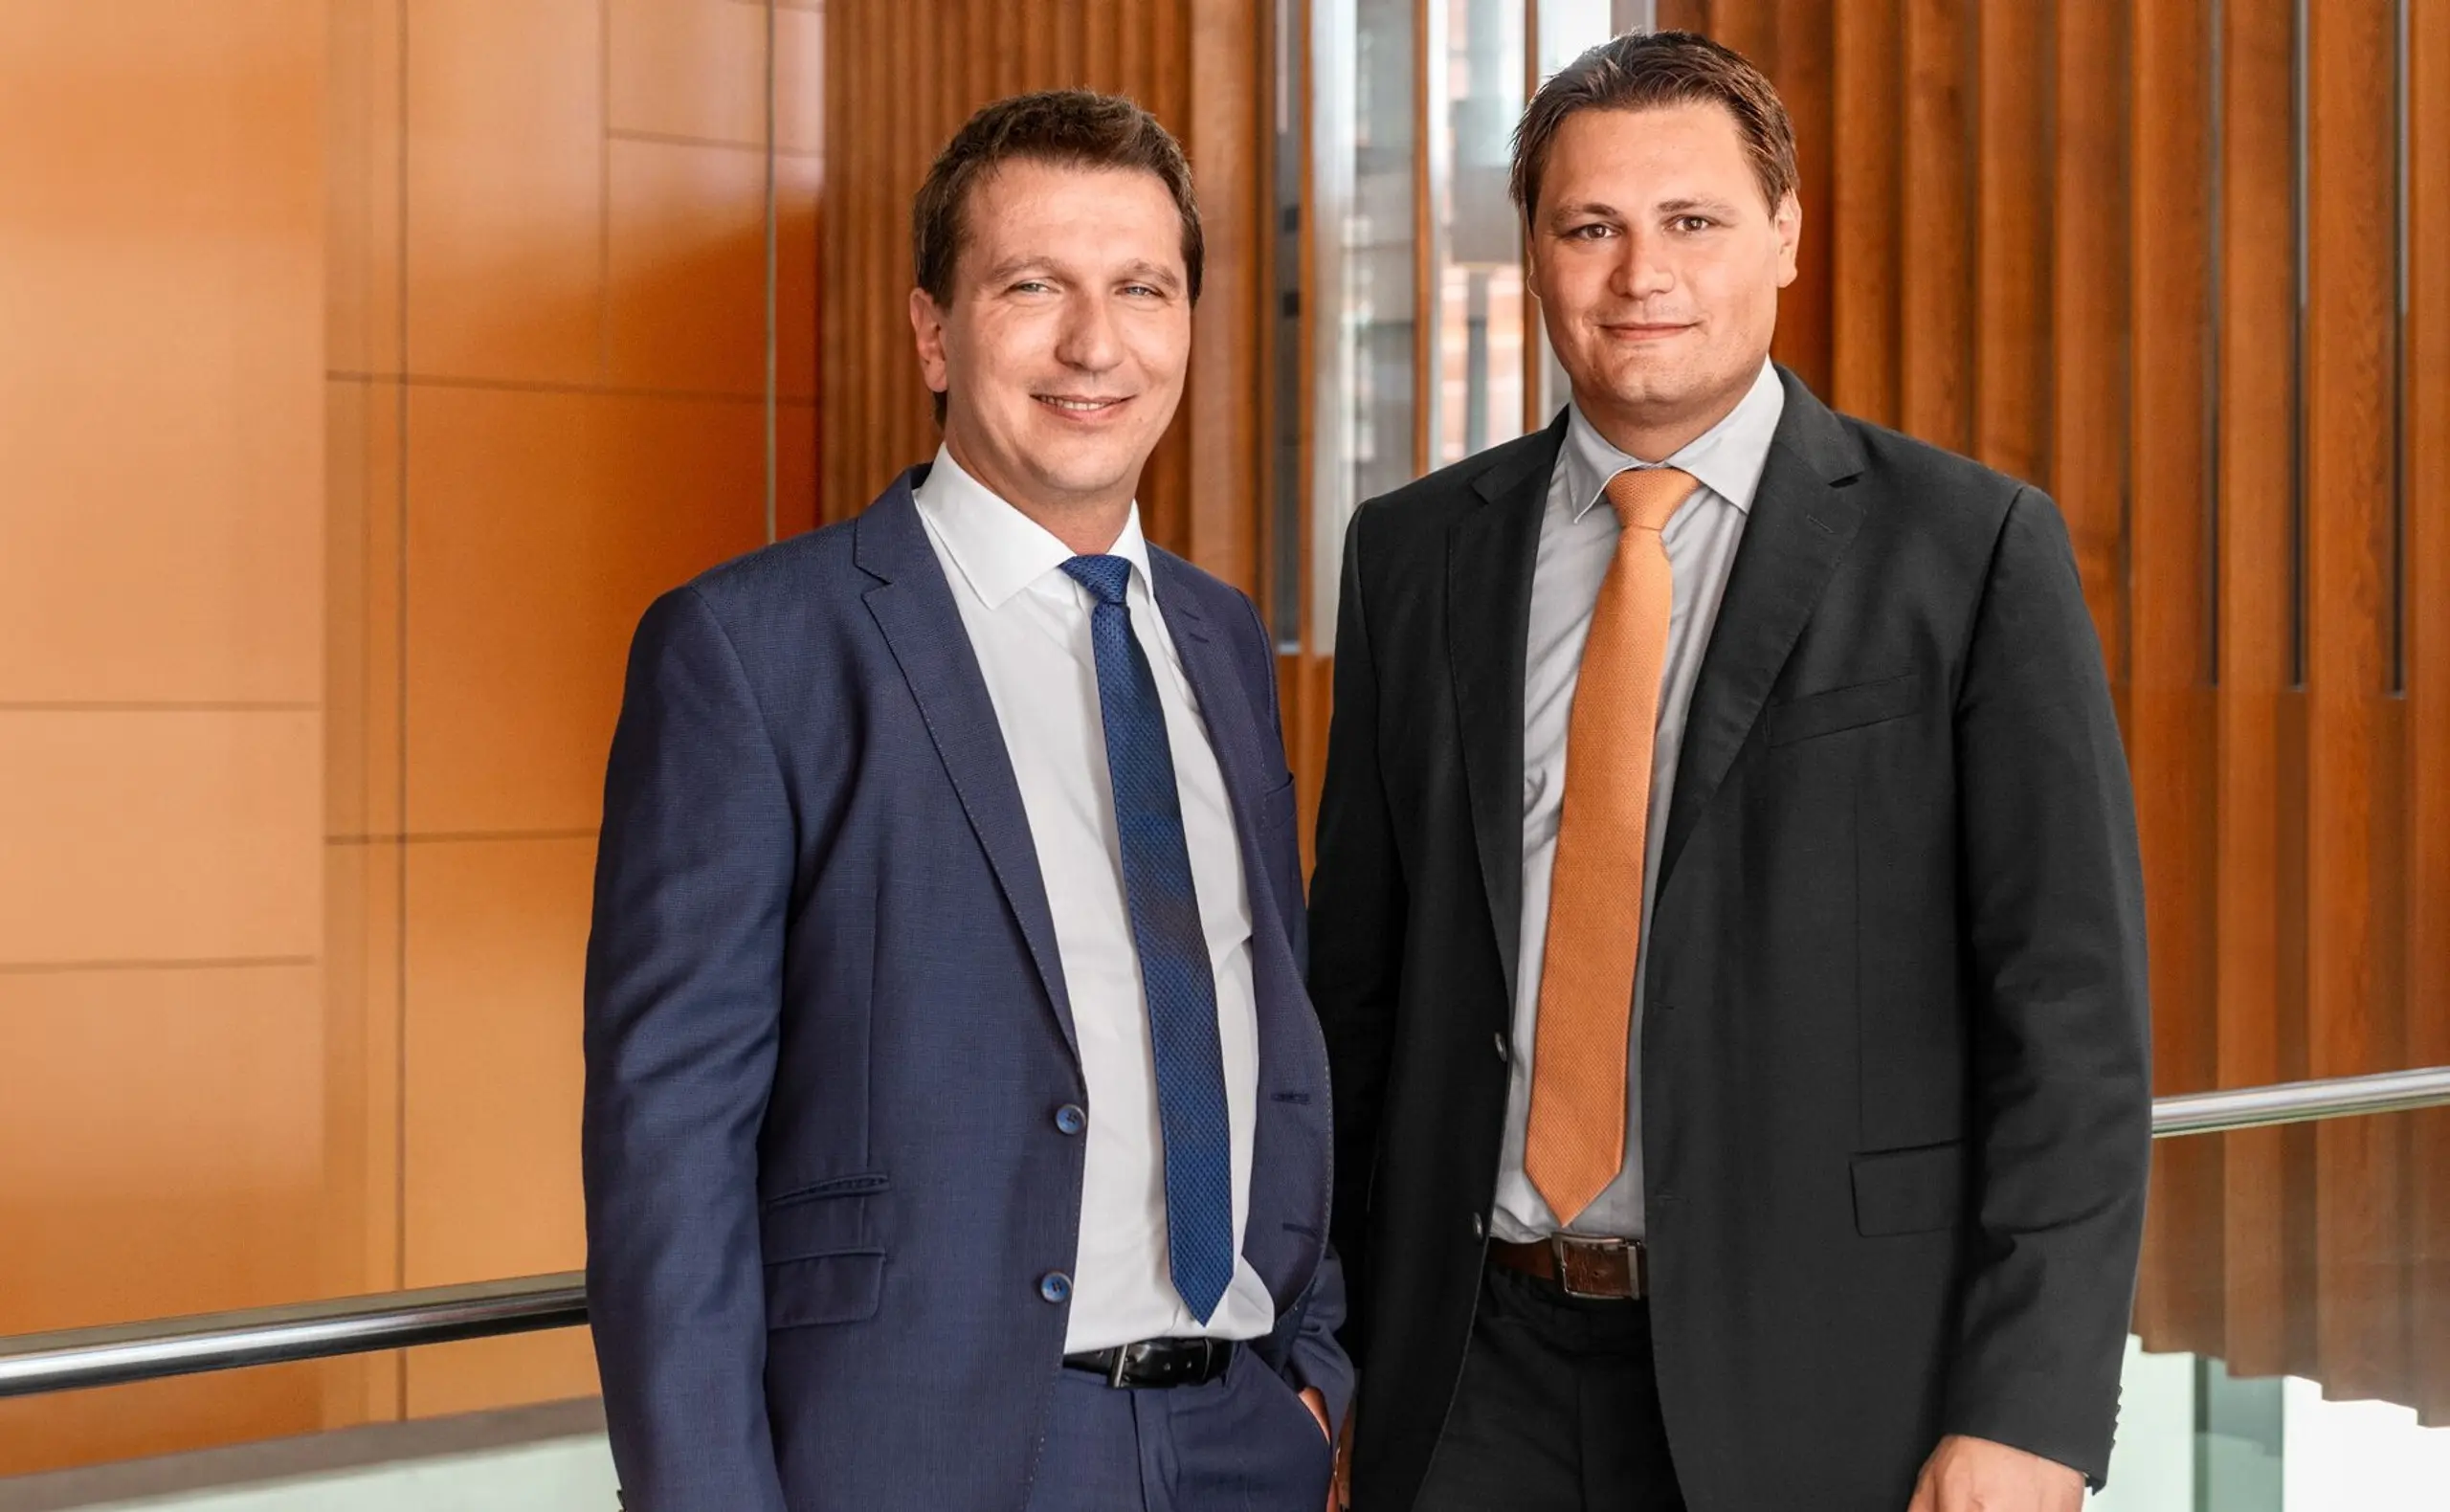 Die Blum Group Holding steht zu 100 % in Familienbesitz und wird in dritter Generation von den Cousins Philipp (li.) und Martin Blum geführt.